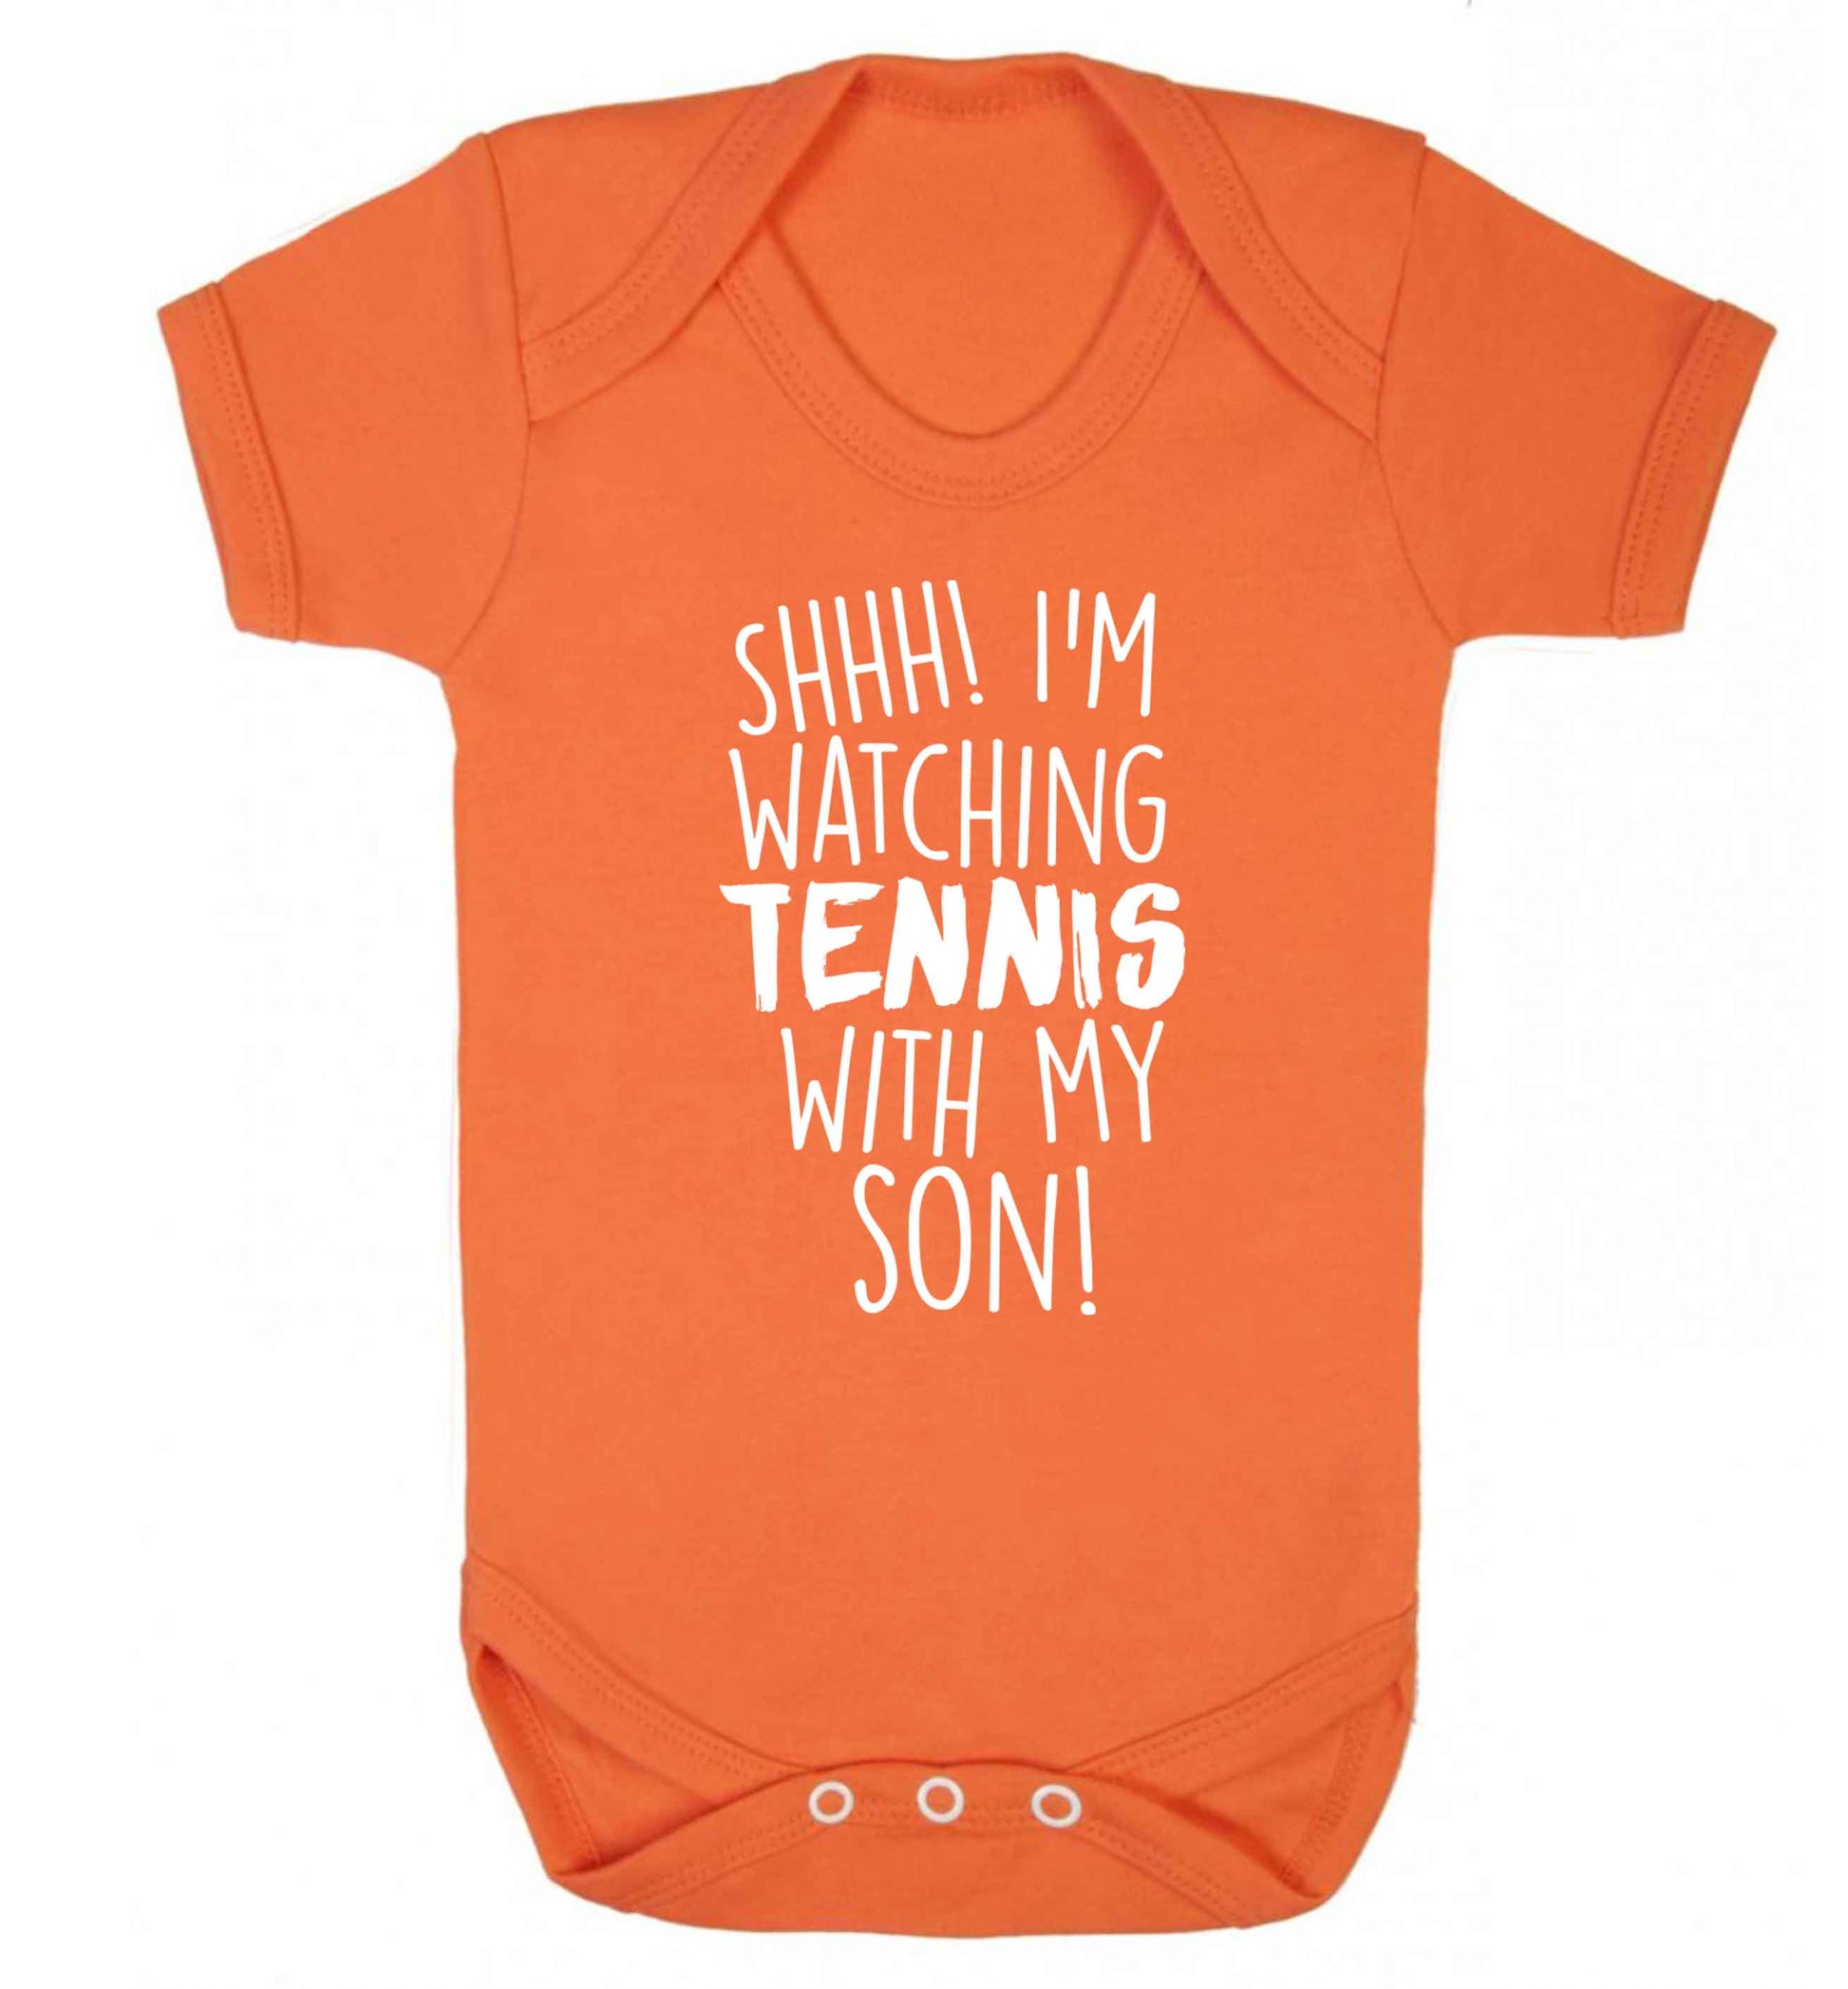 Shh! I'm watching tennis with my son! Baby Vest orange 18-24 months